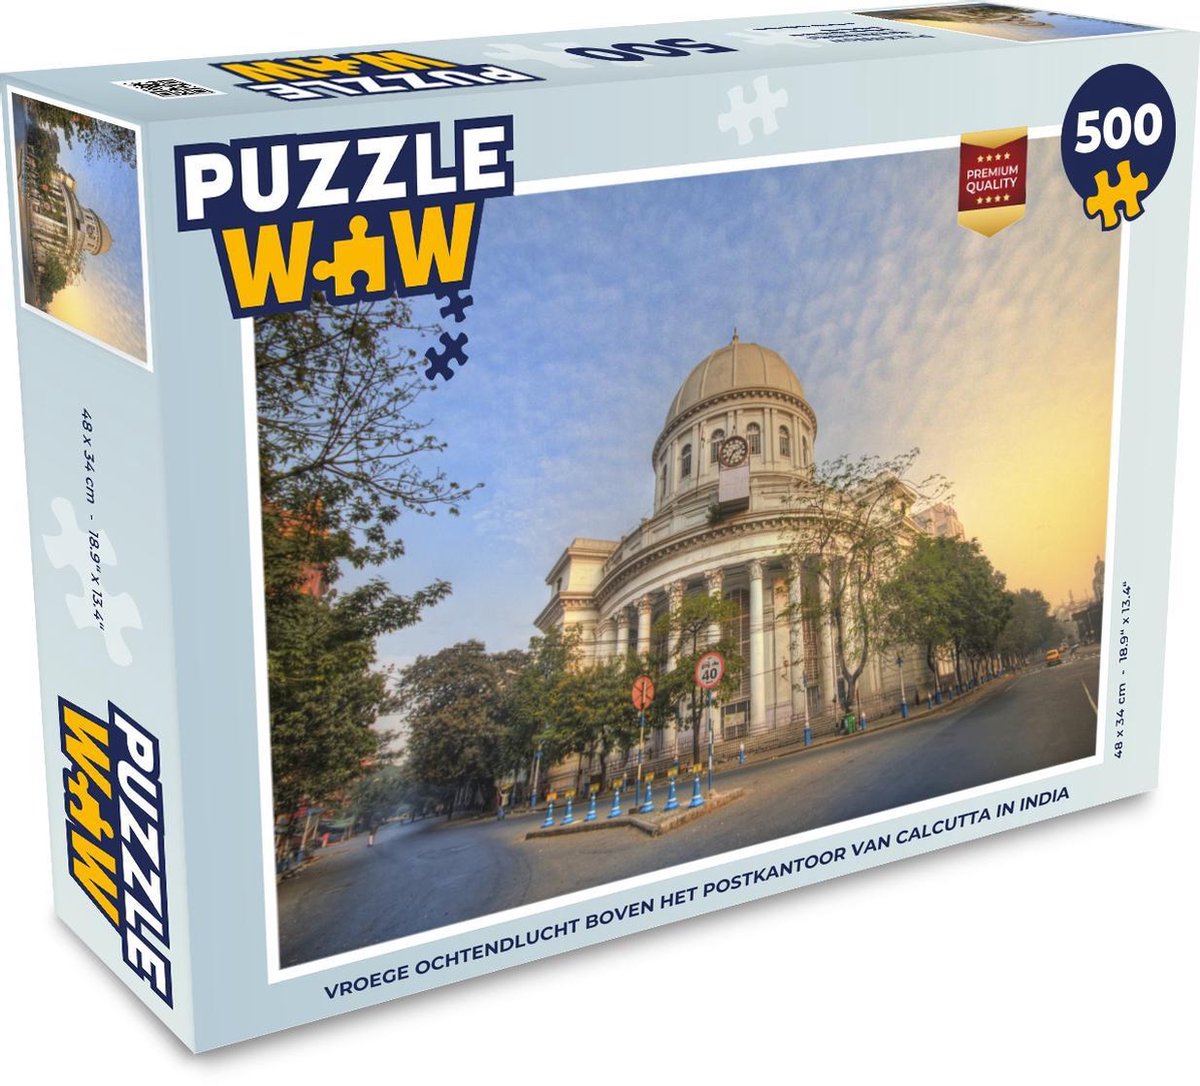 Afbeelding van product Puzzel 500 stukjes Calcutta - Vroege ochtendlucht boven het postkantoor van Calcutta in India - PuzzleWow heeft +100000 puzzels